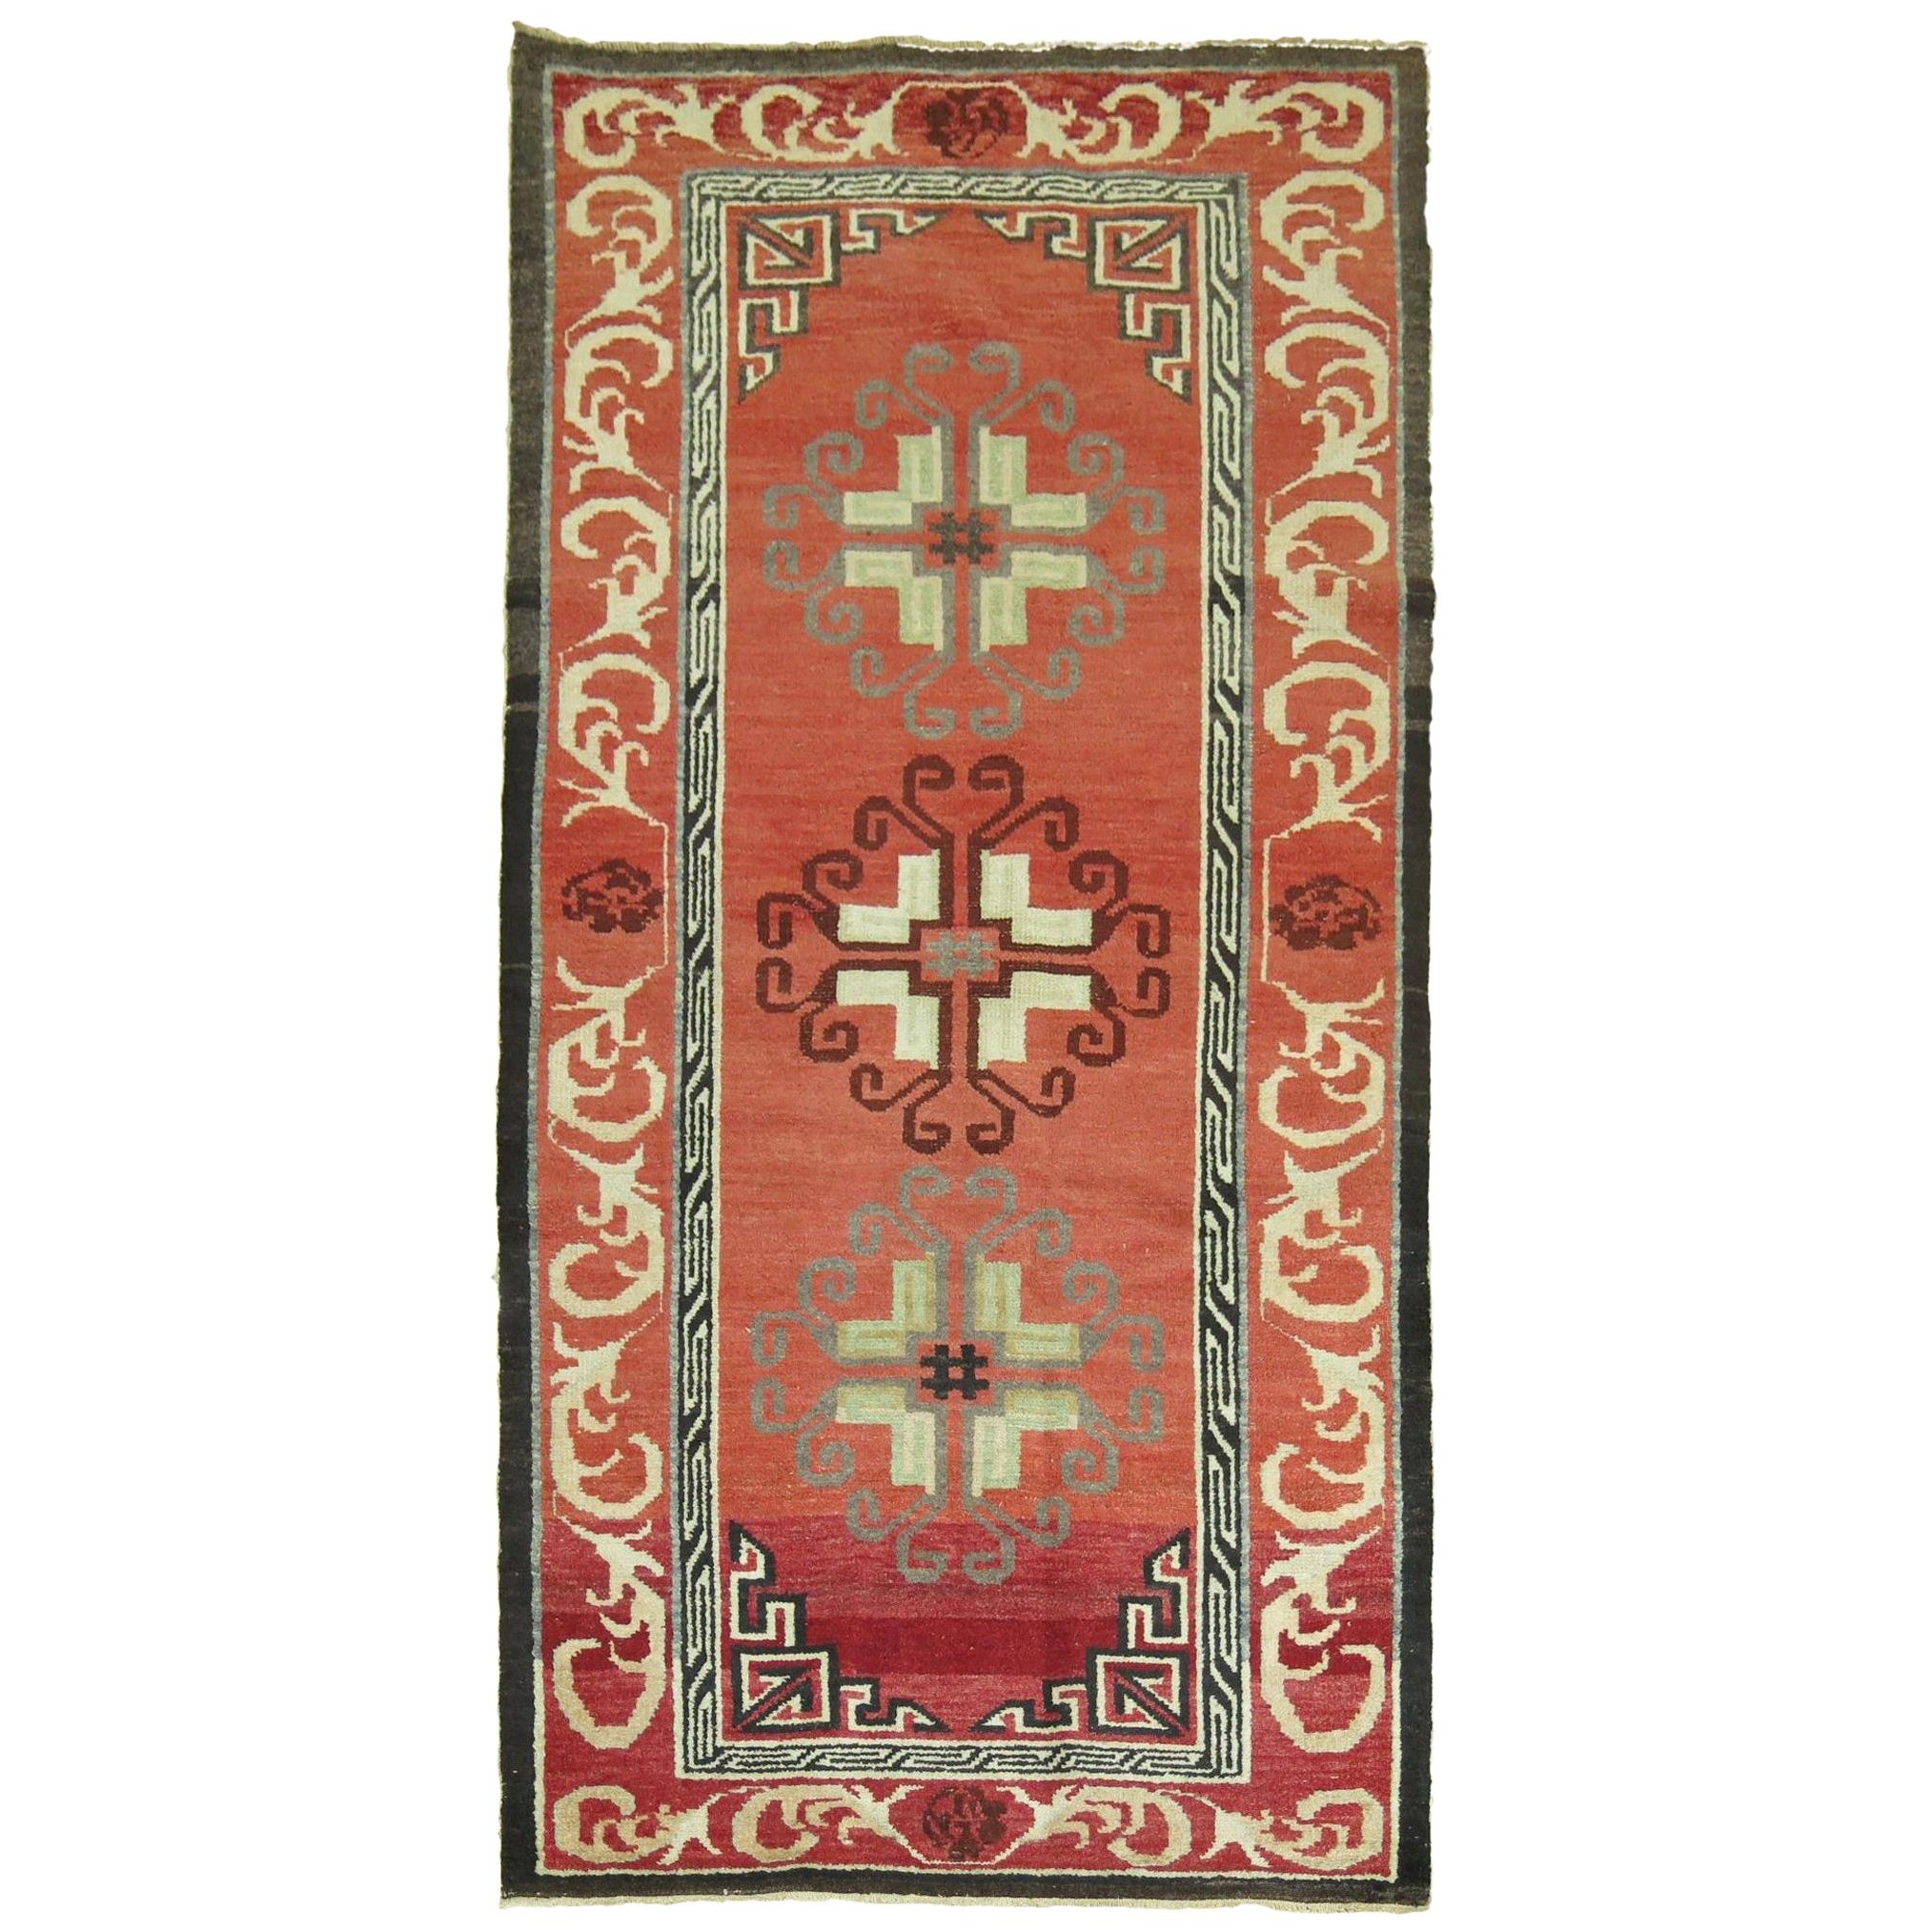 Tapis turc vintage rouge inspiré des tapis asiatiques Khotan du XIXe siècle